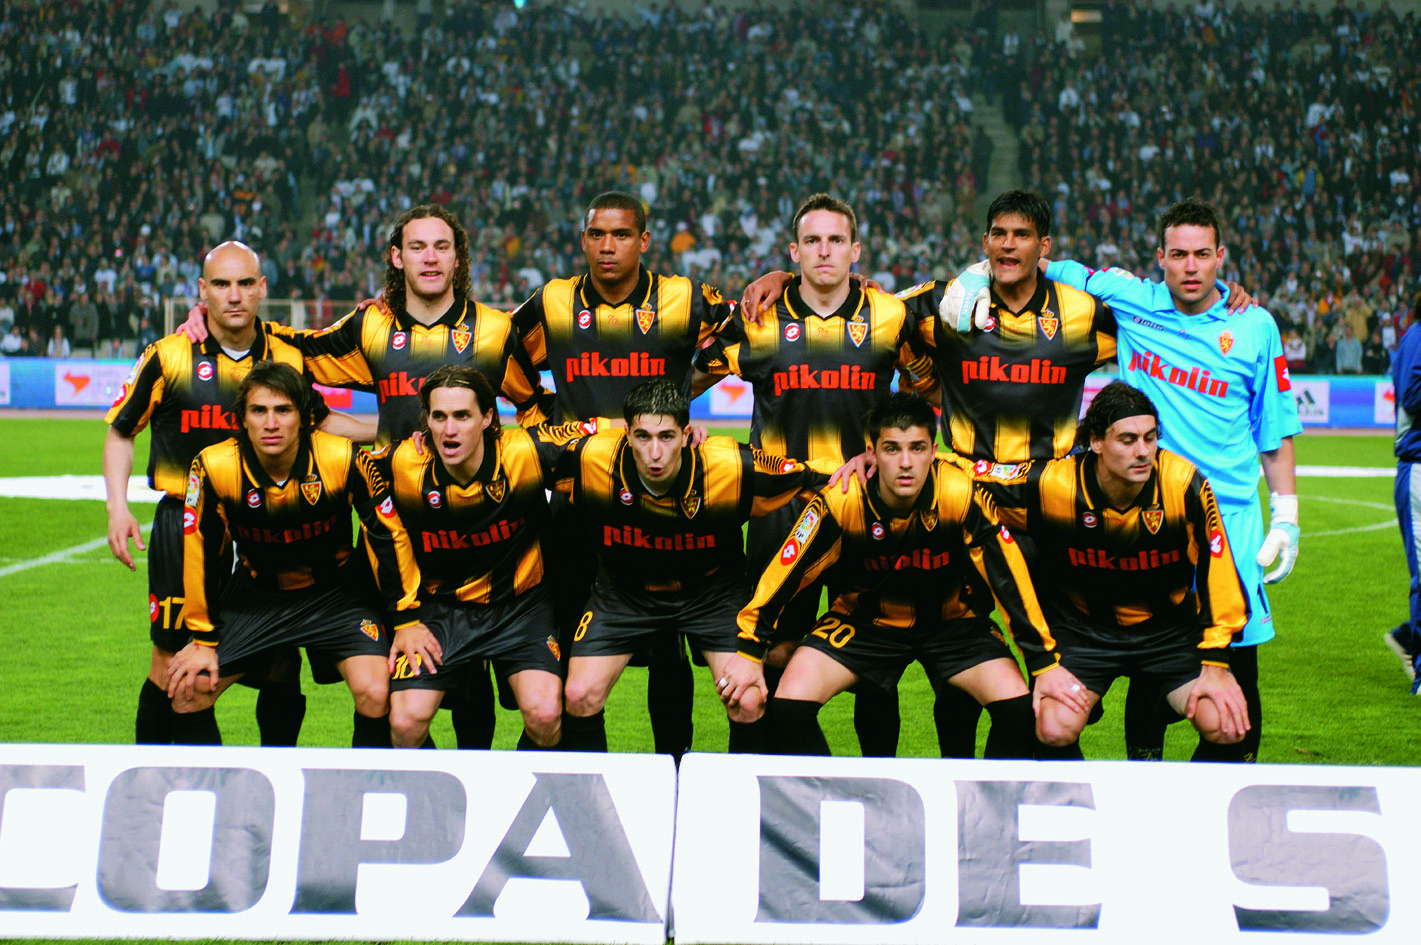 Copa del Rey 2004